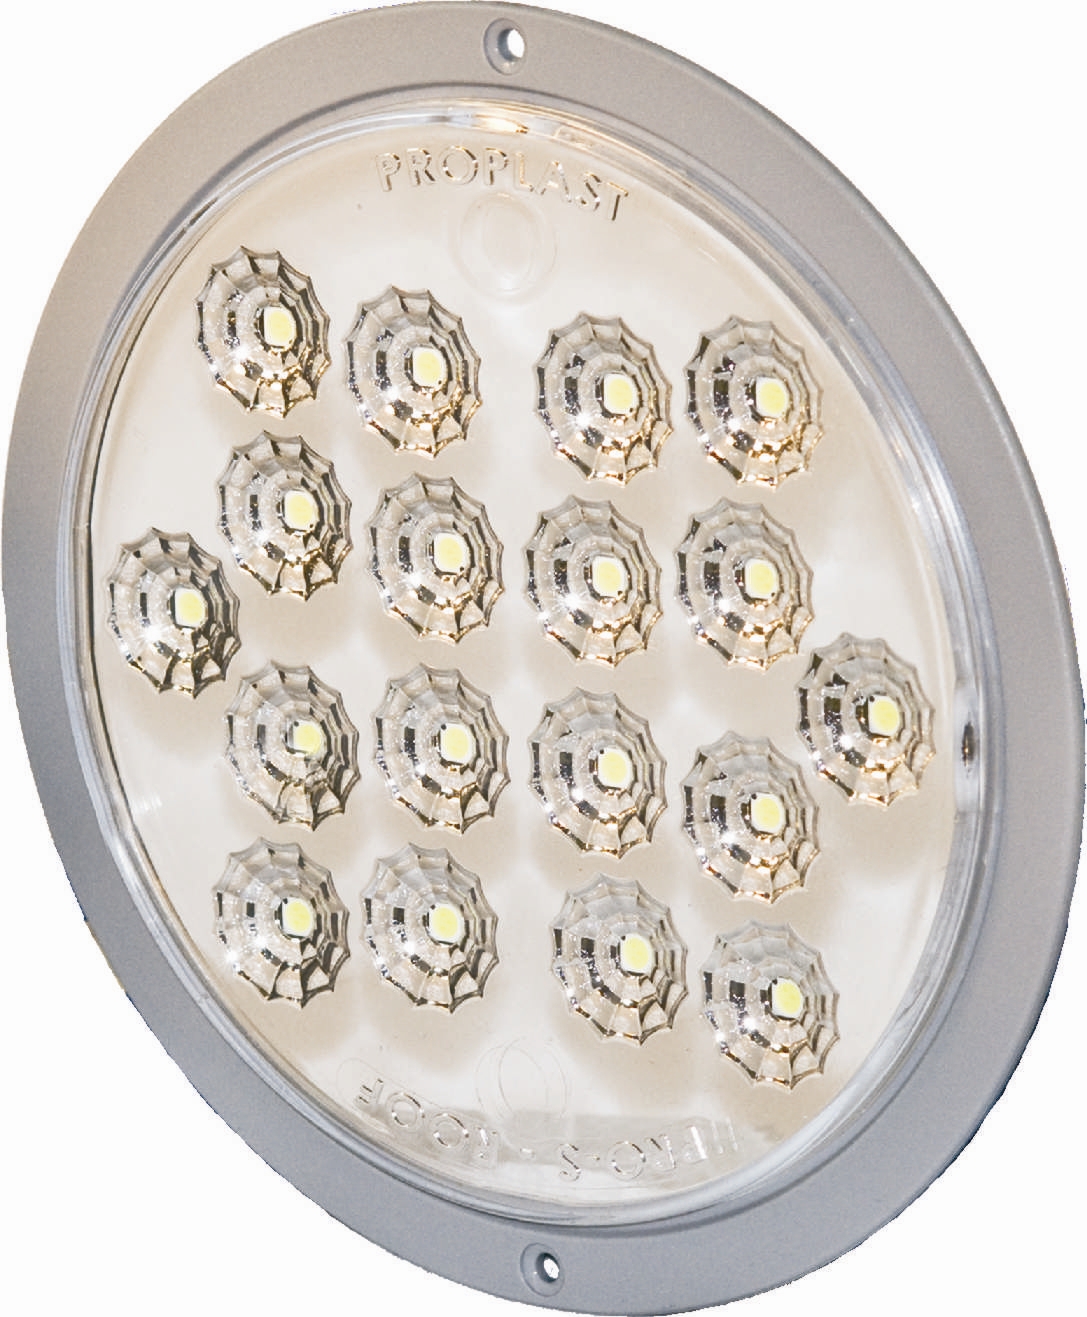 LED sisvalo upotettava,12V,18led,500lm,7,5W,ADR-hyv,IP69K